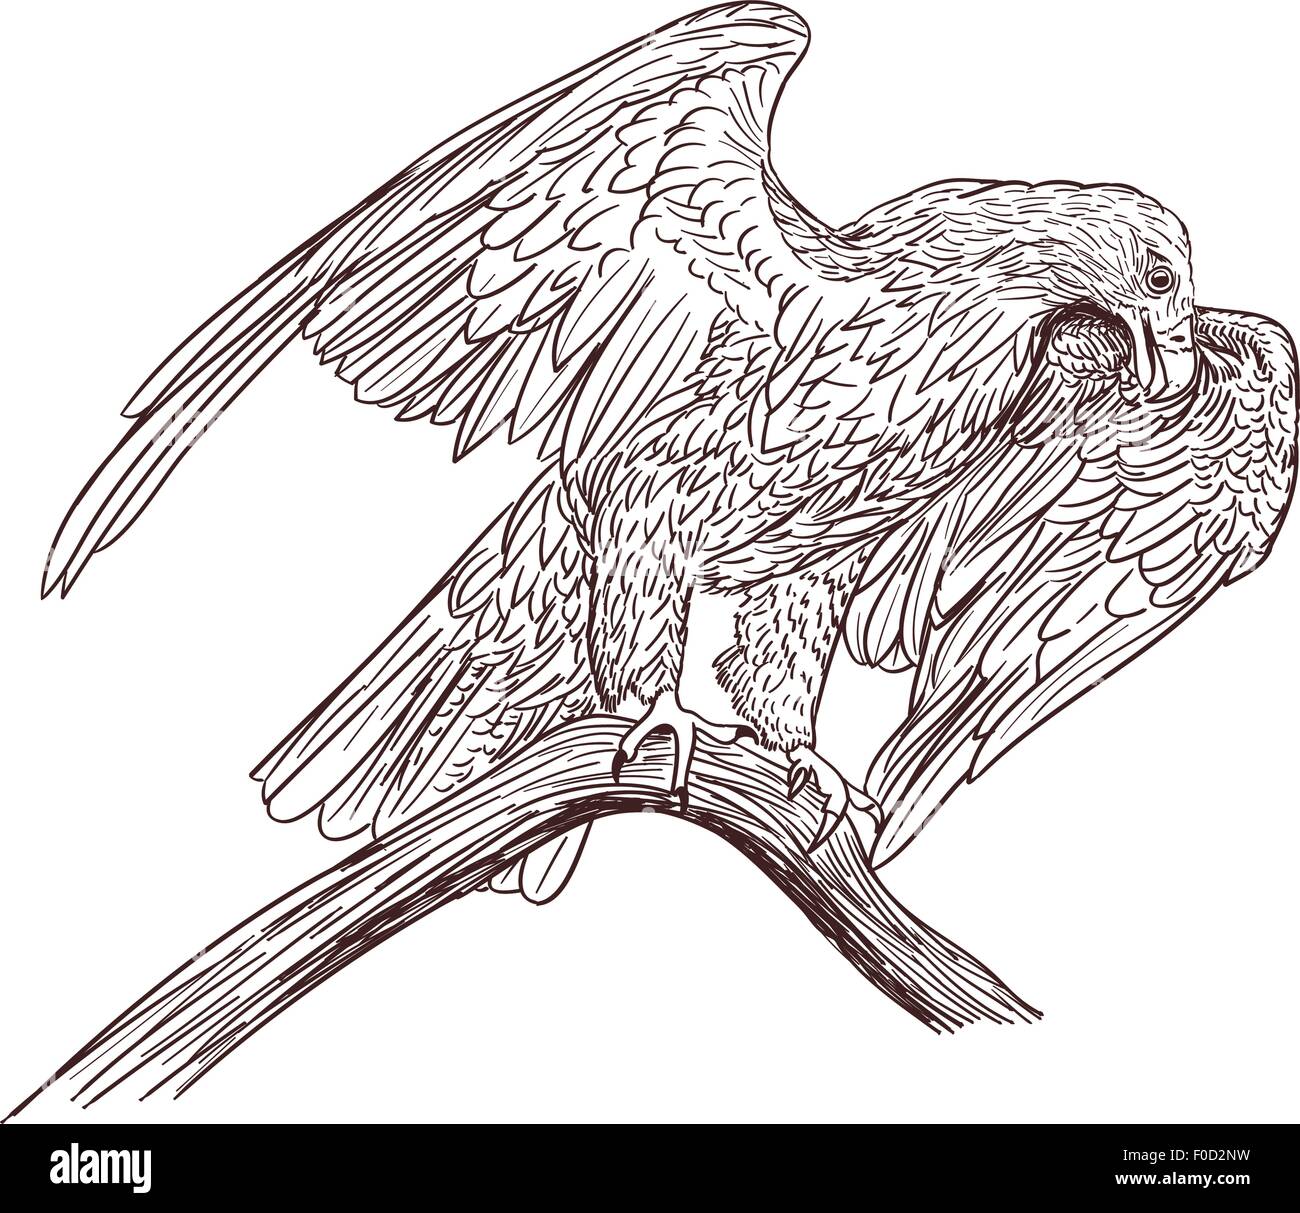 Adler-Monochrome Zeichnung auf weiß Stock Vektor